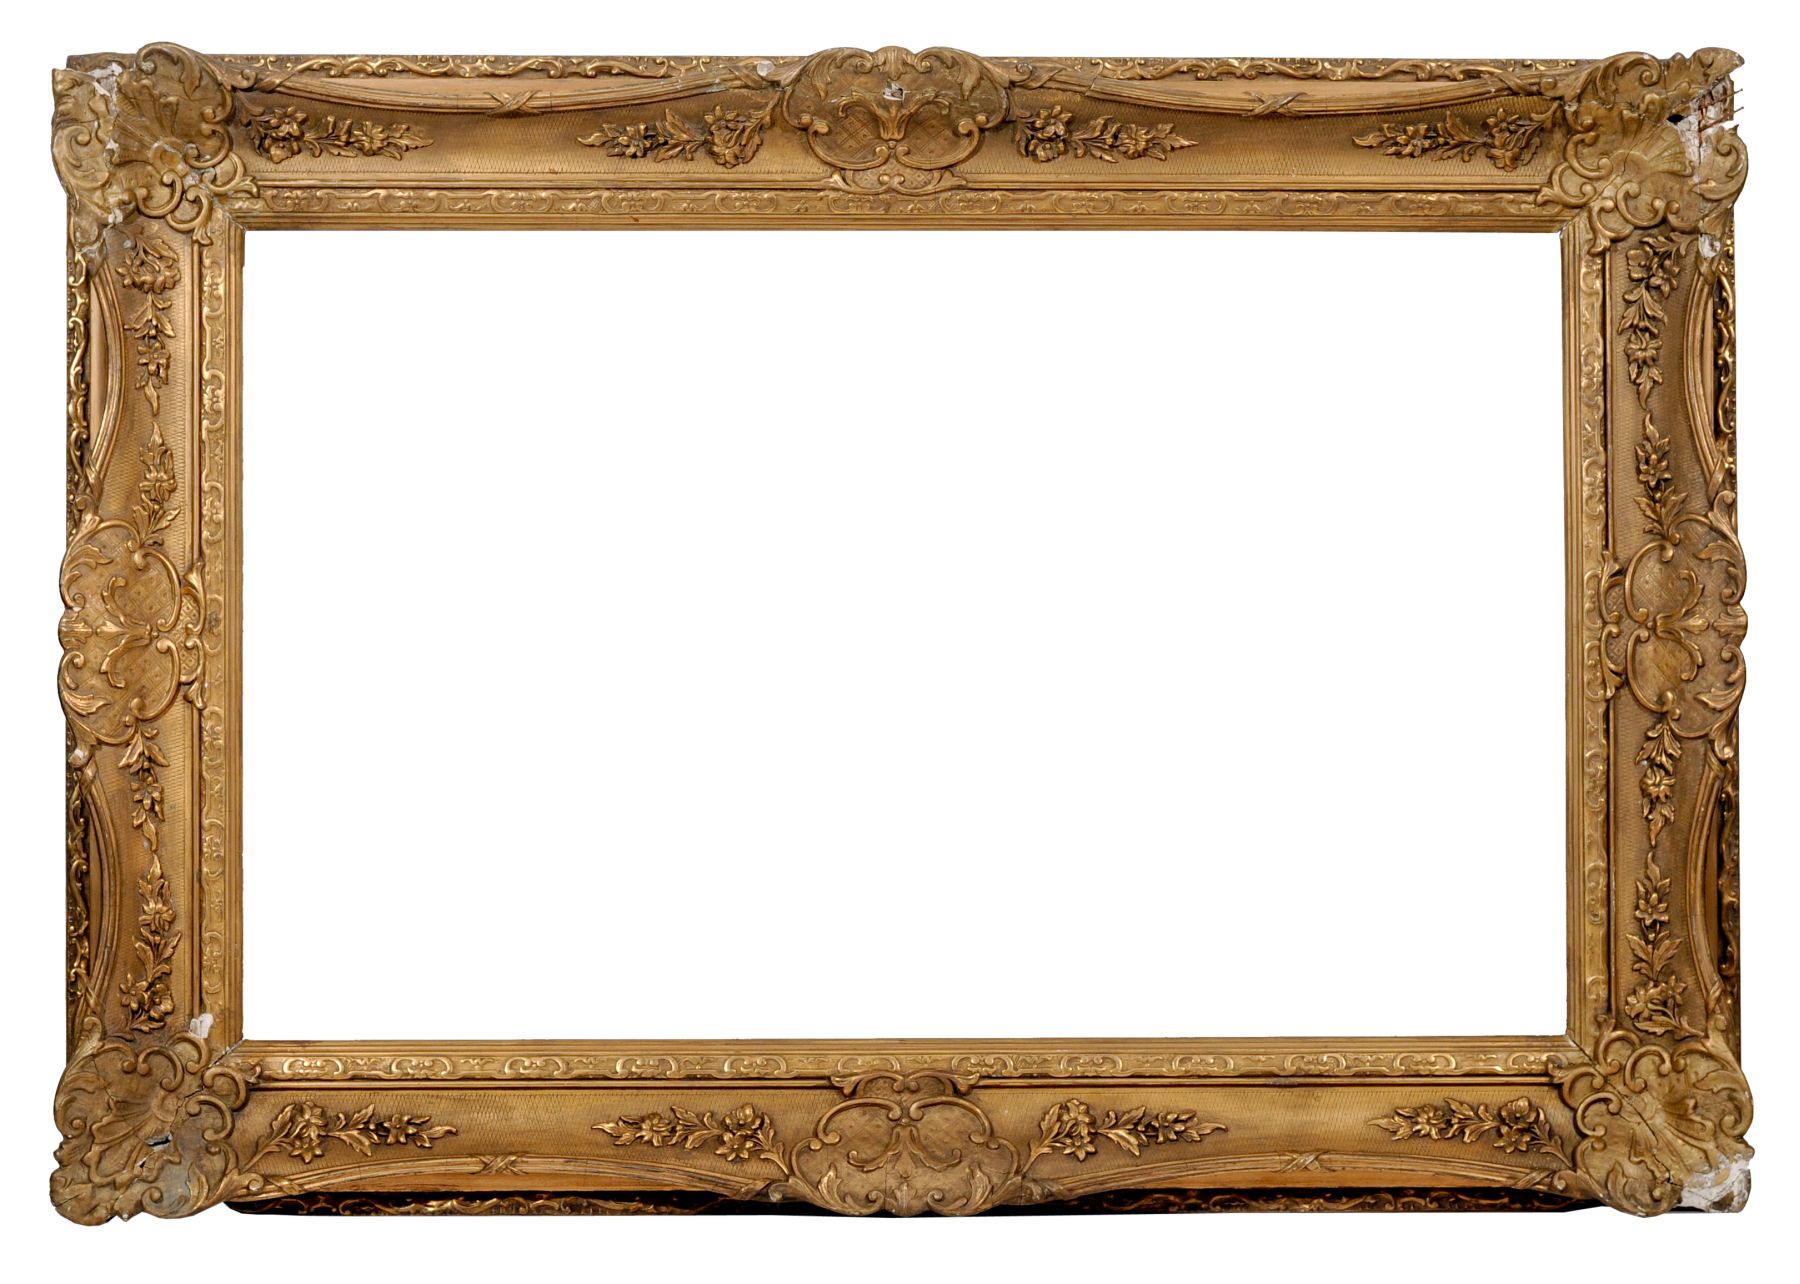 Großer Rahmen im Louis-XV-Stil. 2. H. 19. Jh. Holz, masseverziert und mit goldfarbenem Überzug.